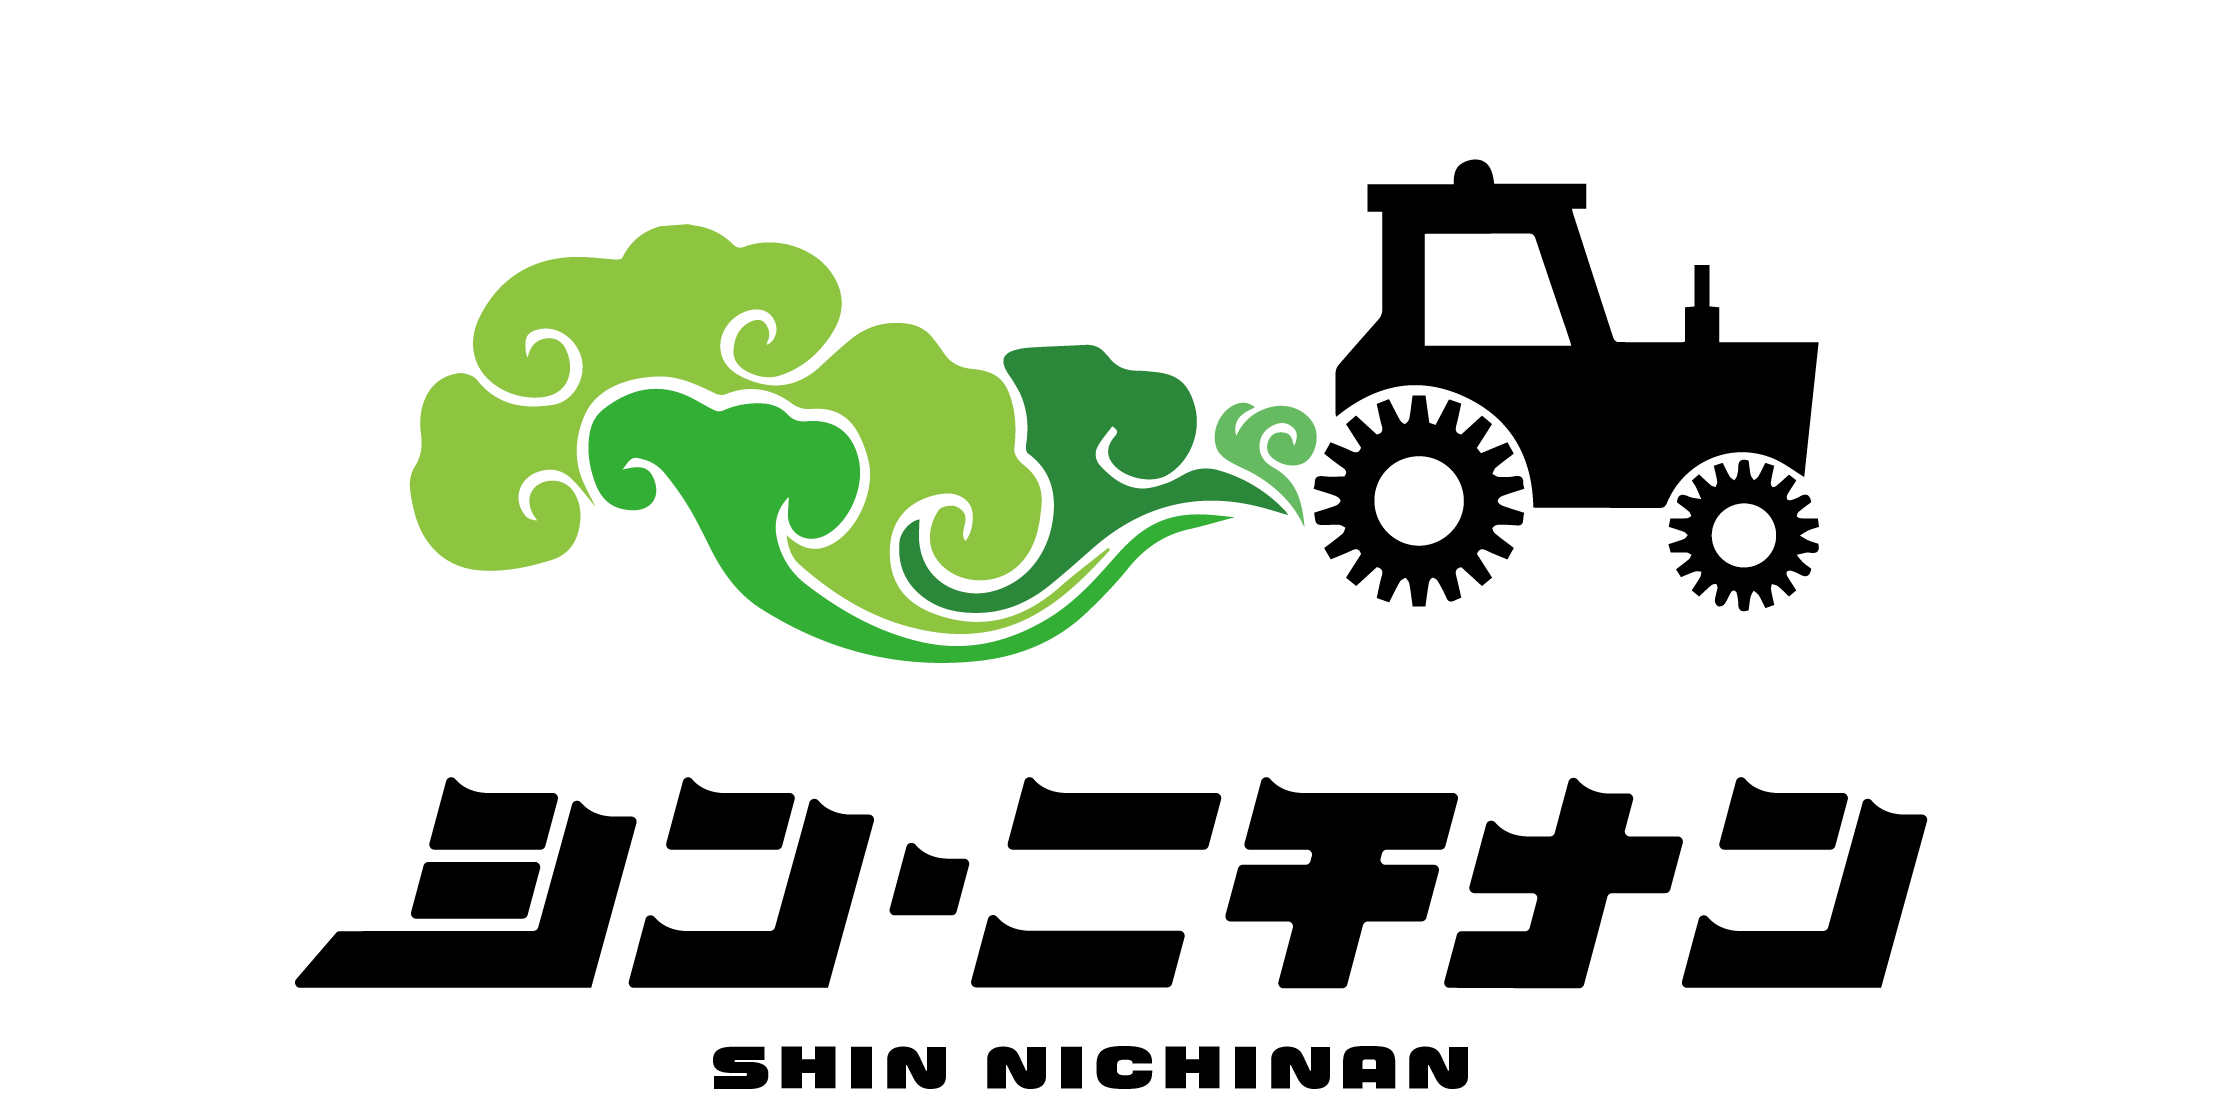 shin nichinan